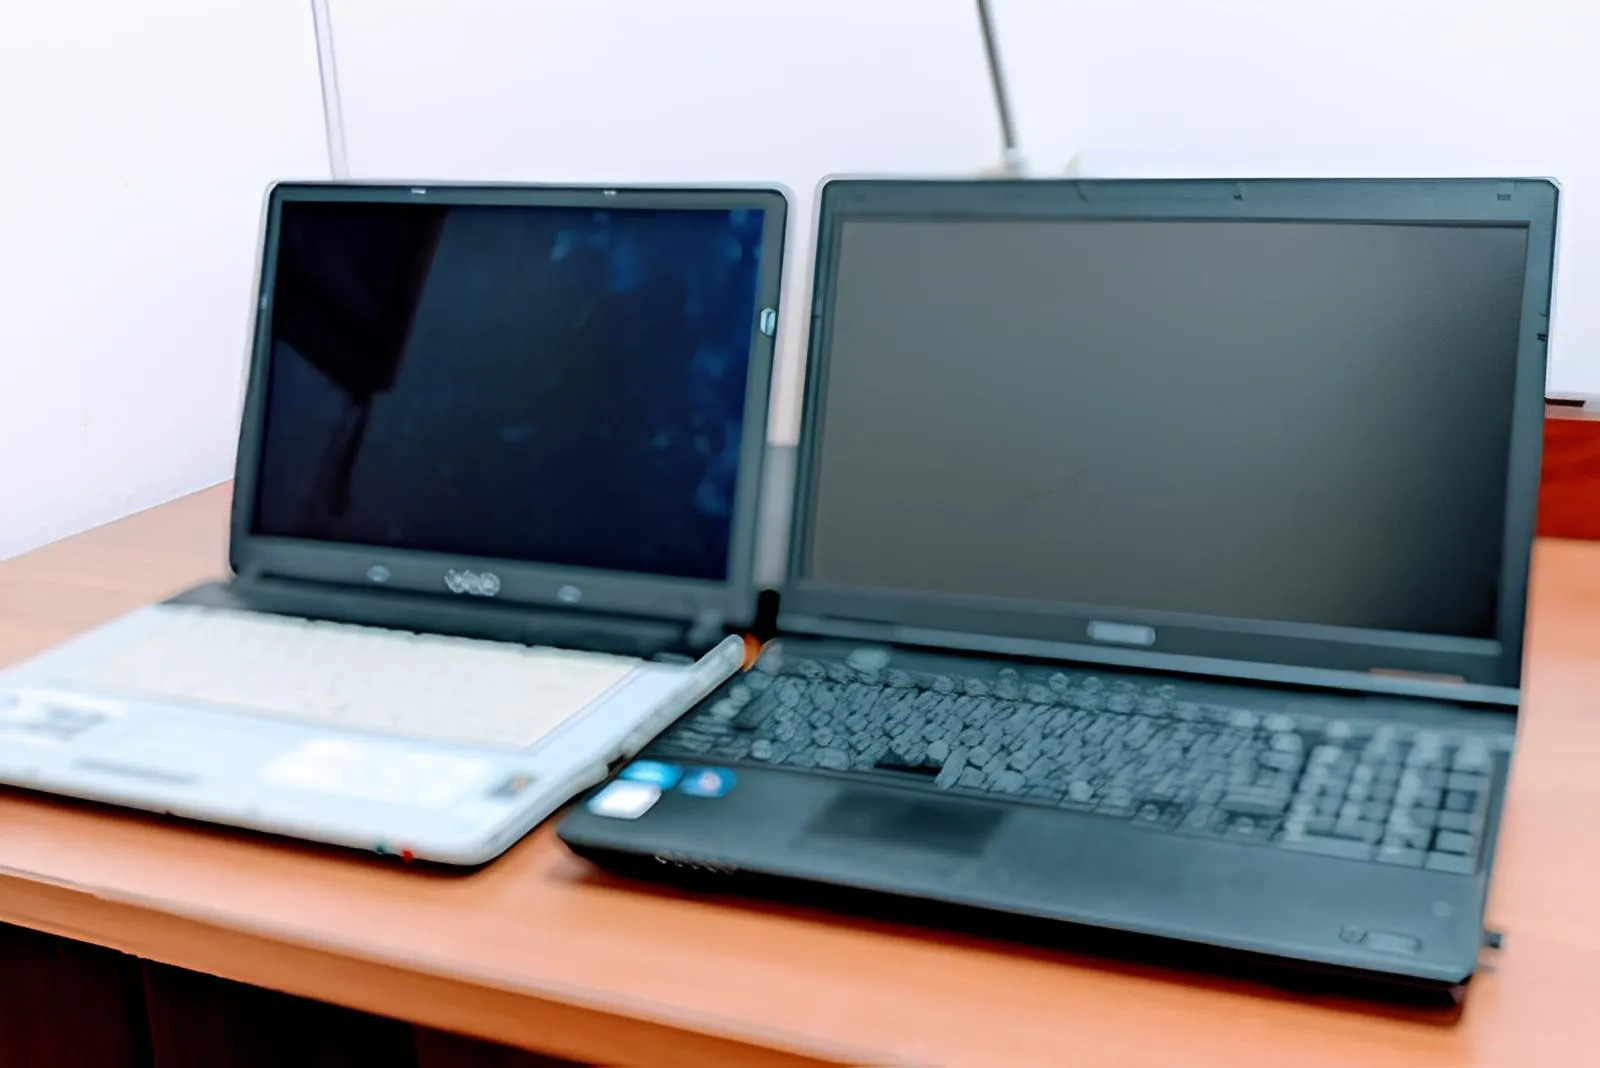 中古パソコン２台。奥の方は外観に汚れが確認できる。